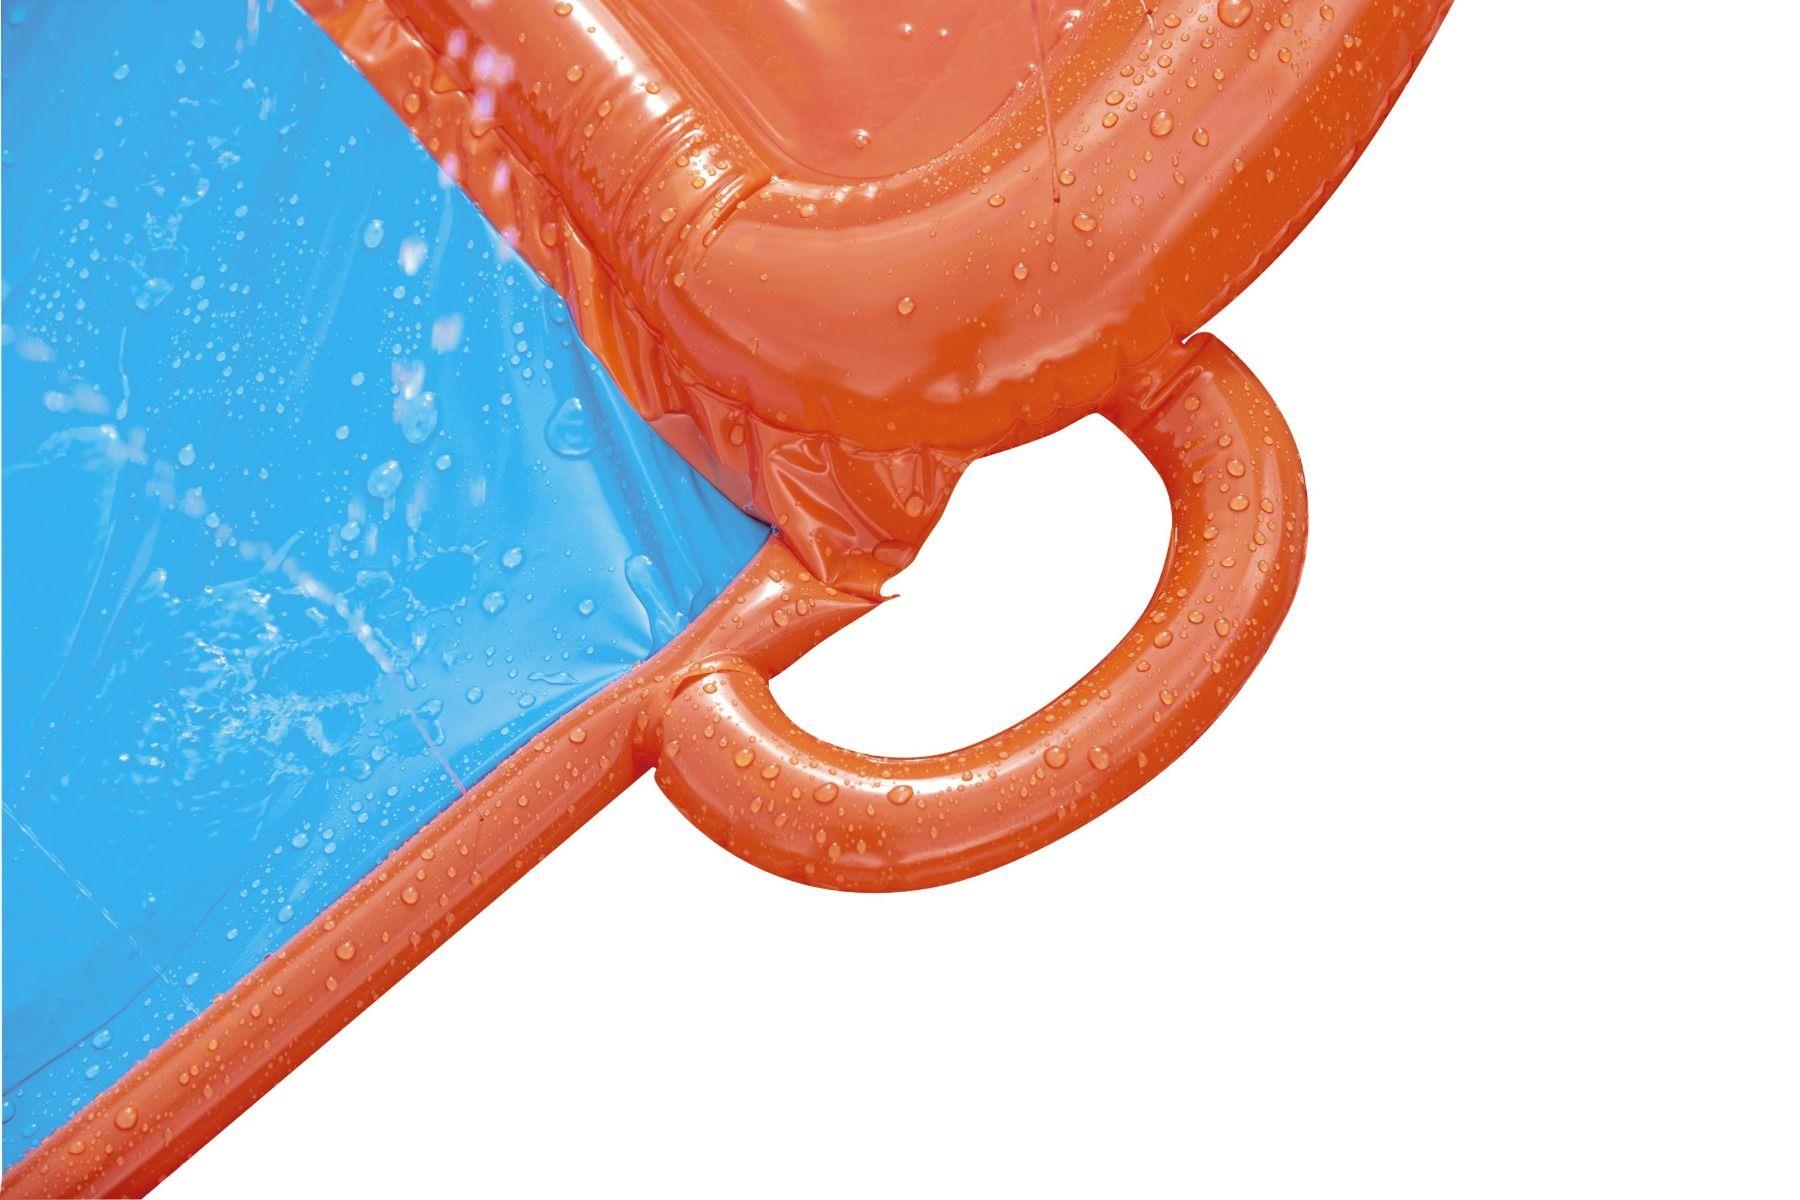 H2O Go Water Slider 4.88m 16ft Slip & Slide Sprinkler Water Toy